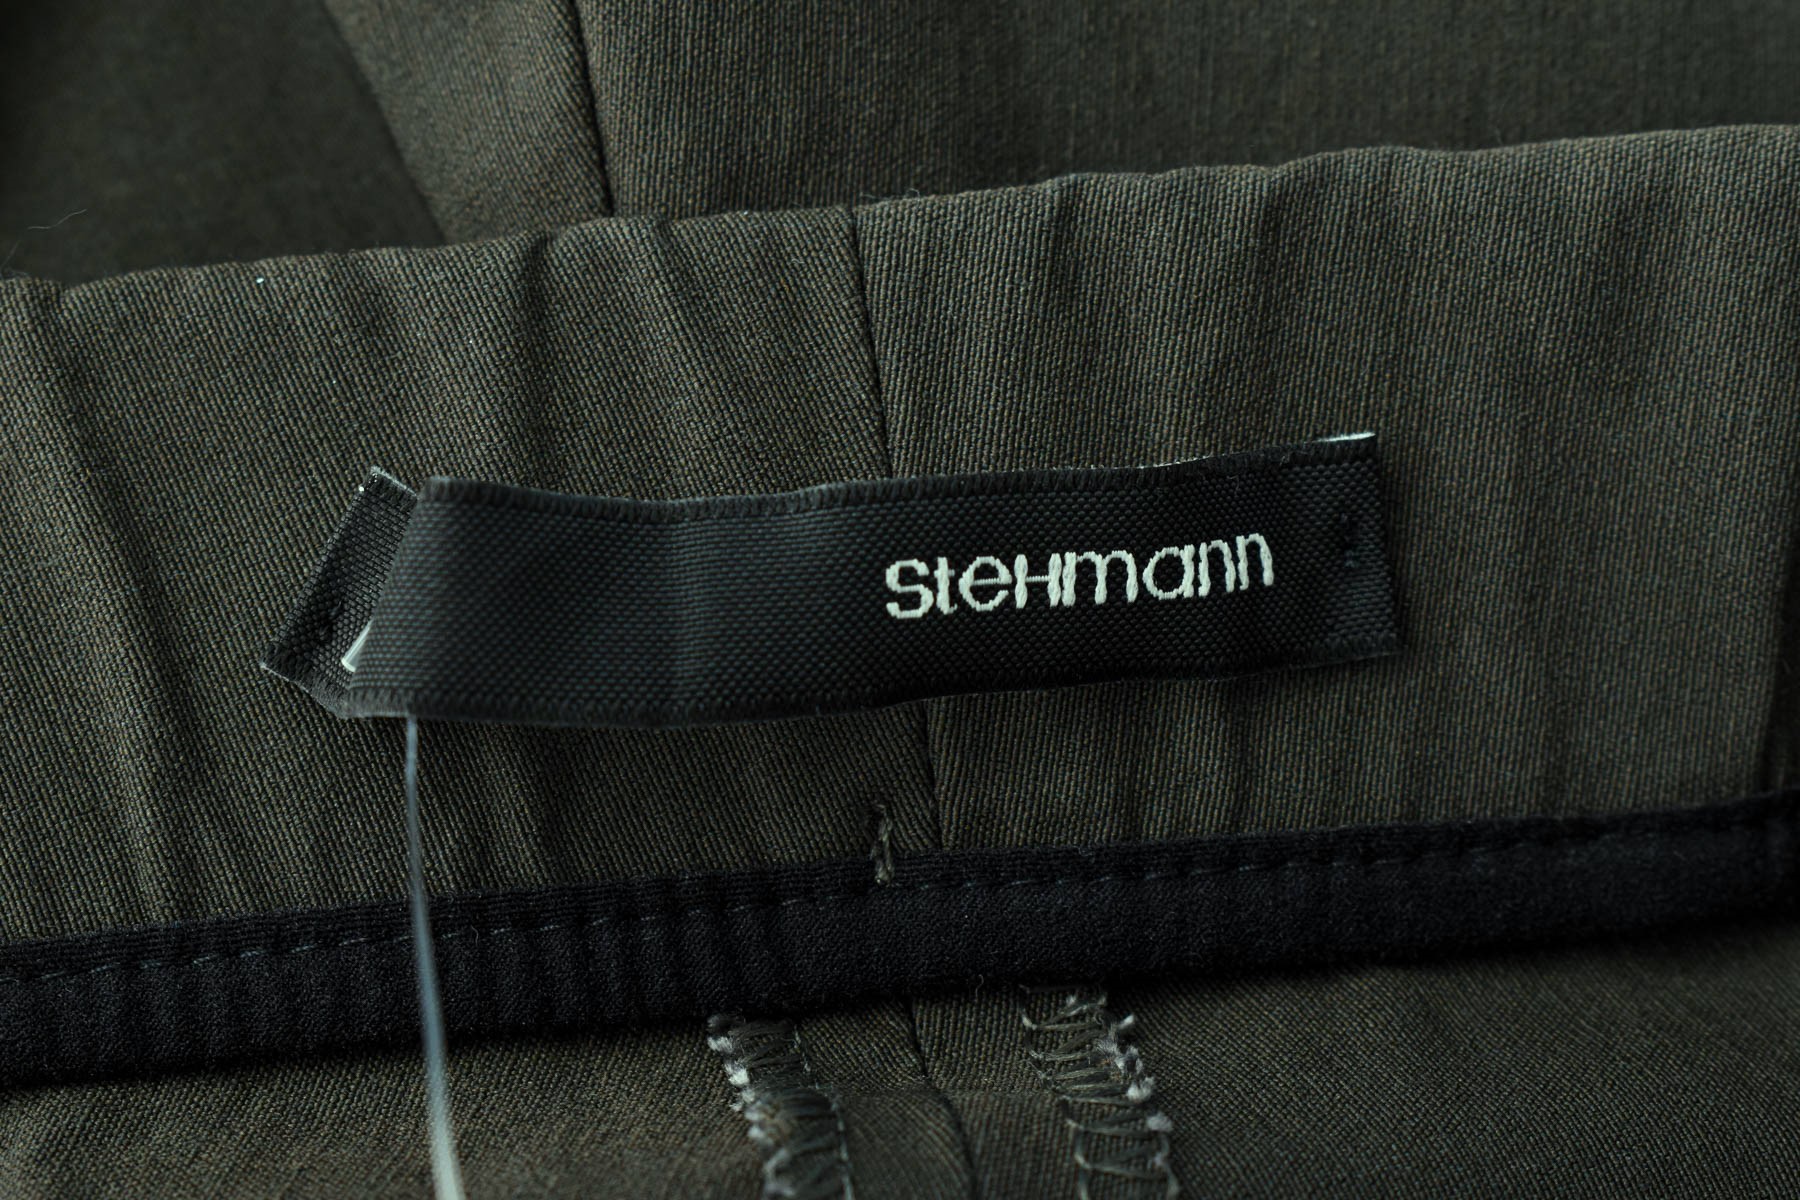 Women's trousers - Stehmann - 2